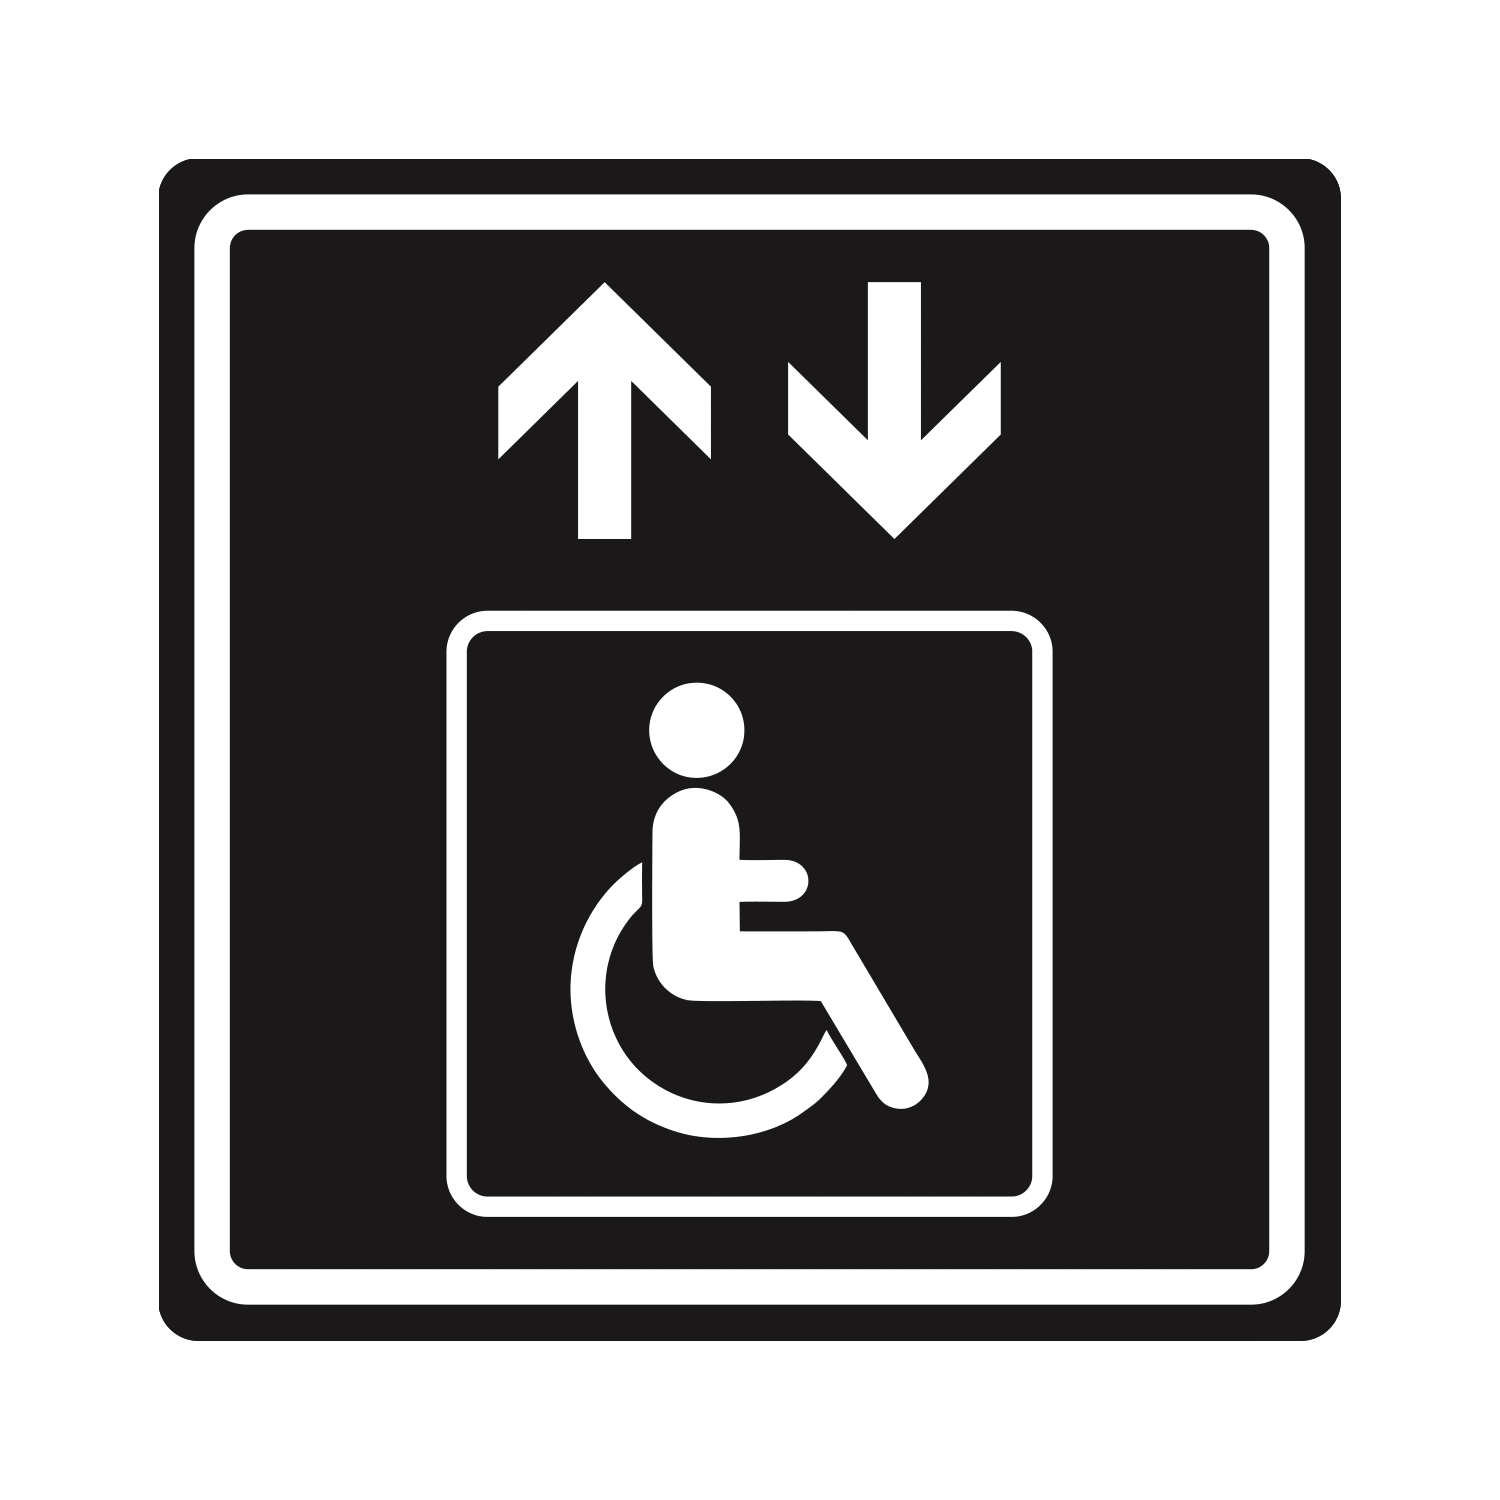 Ширина пути движения на участке дома интерната при встречном движении инвалидов на креслах колясках